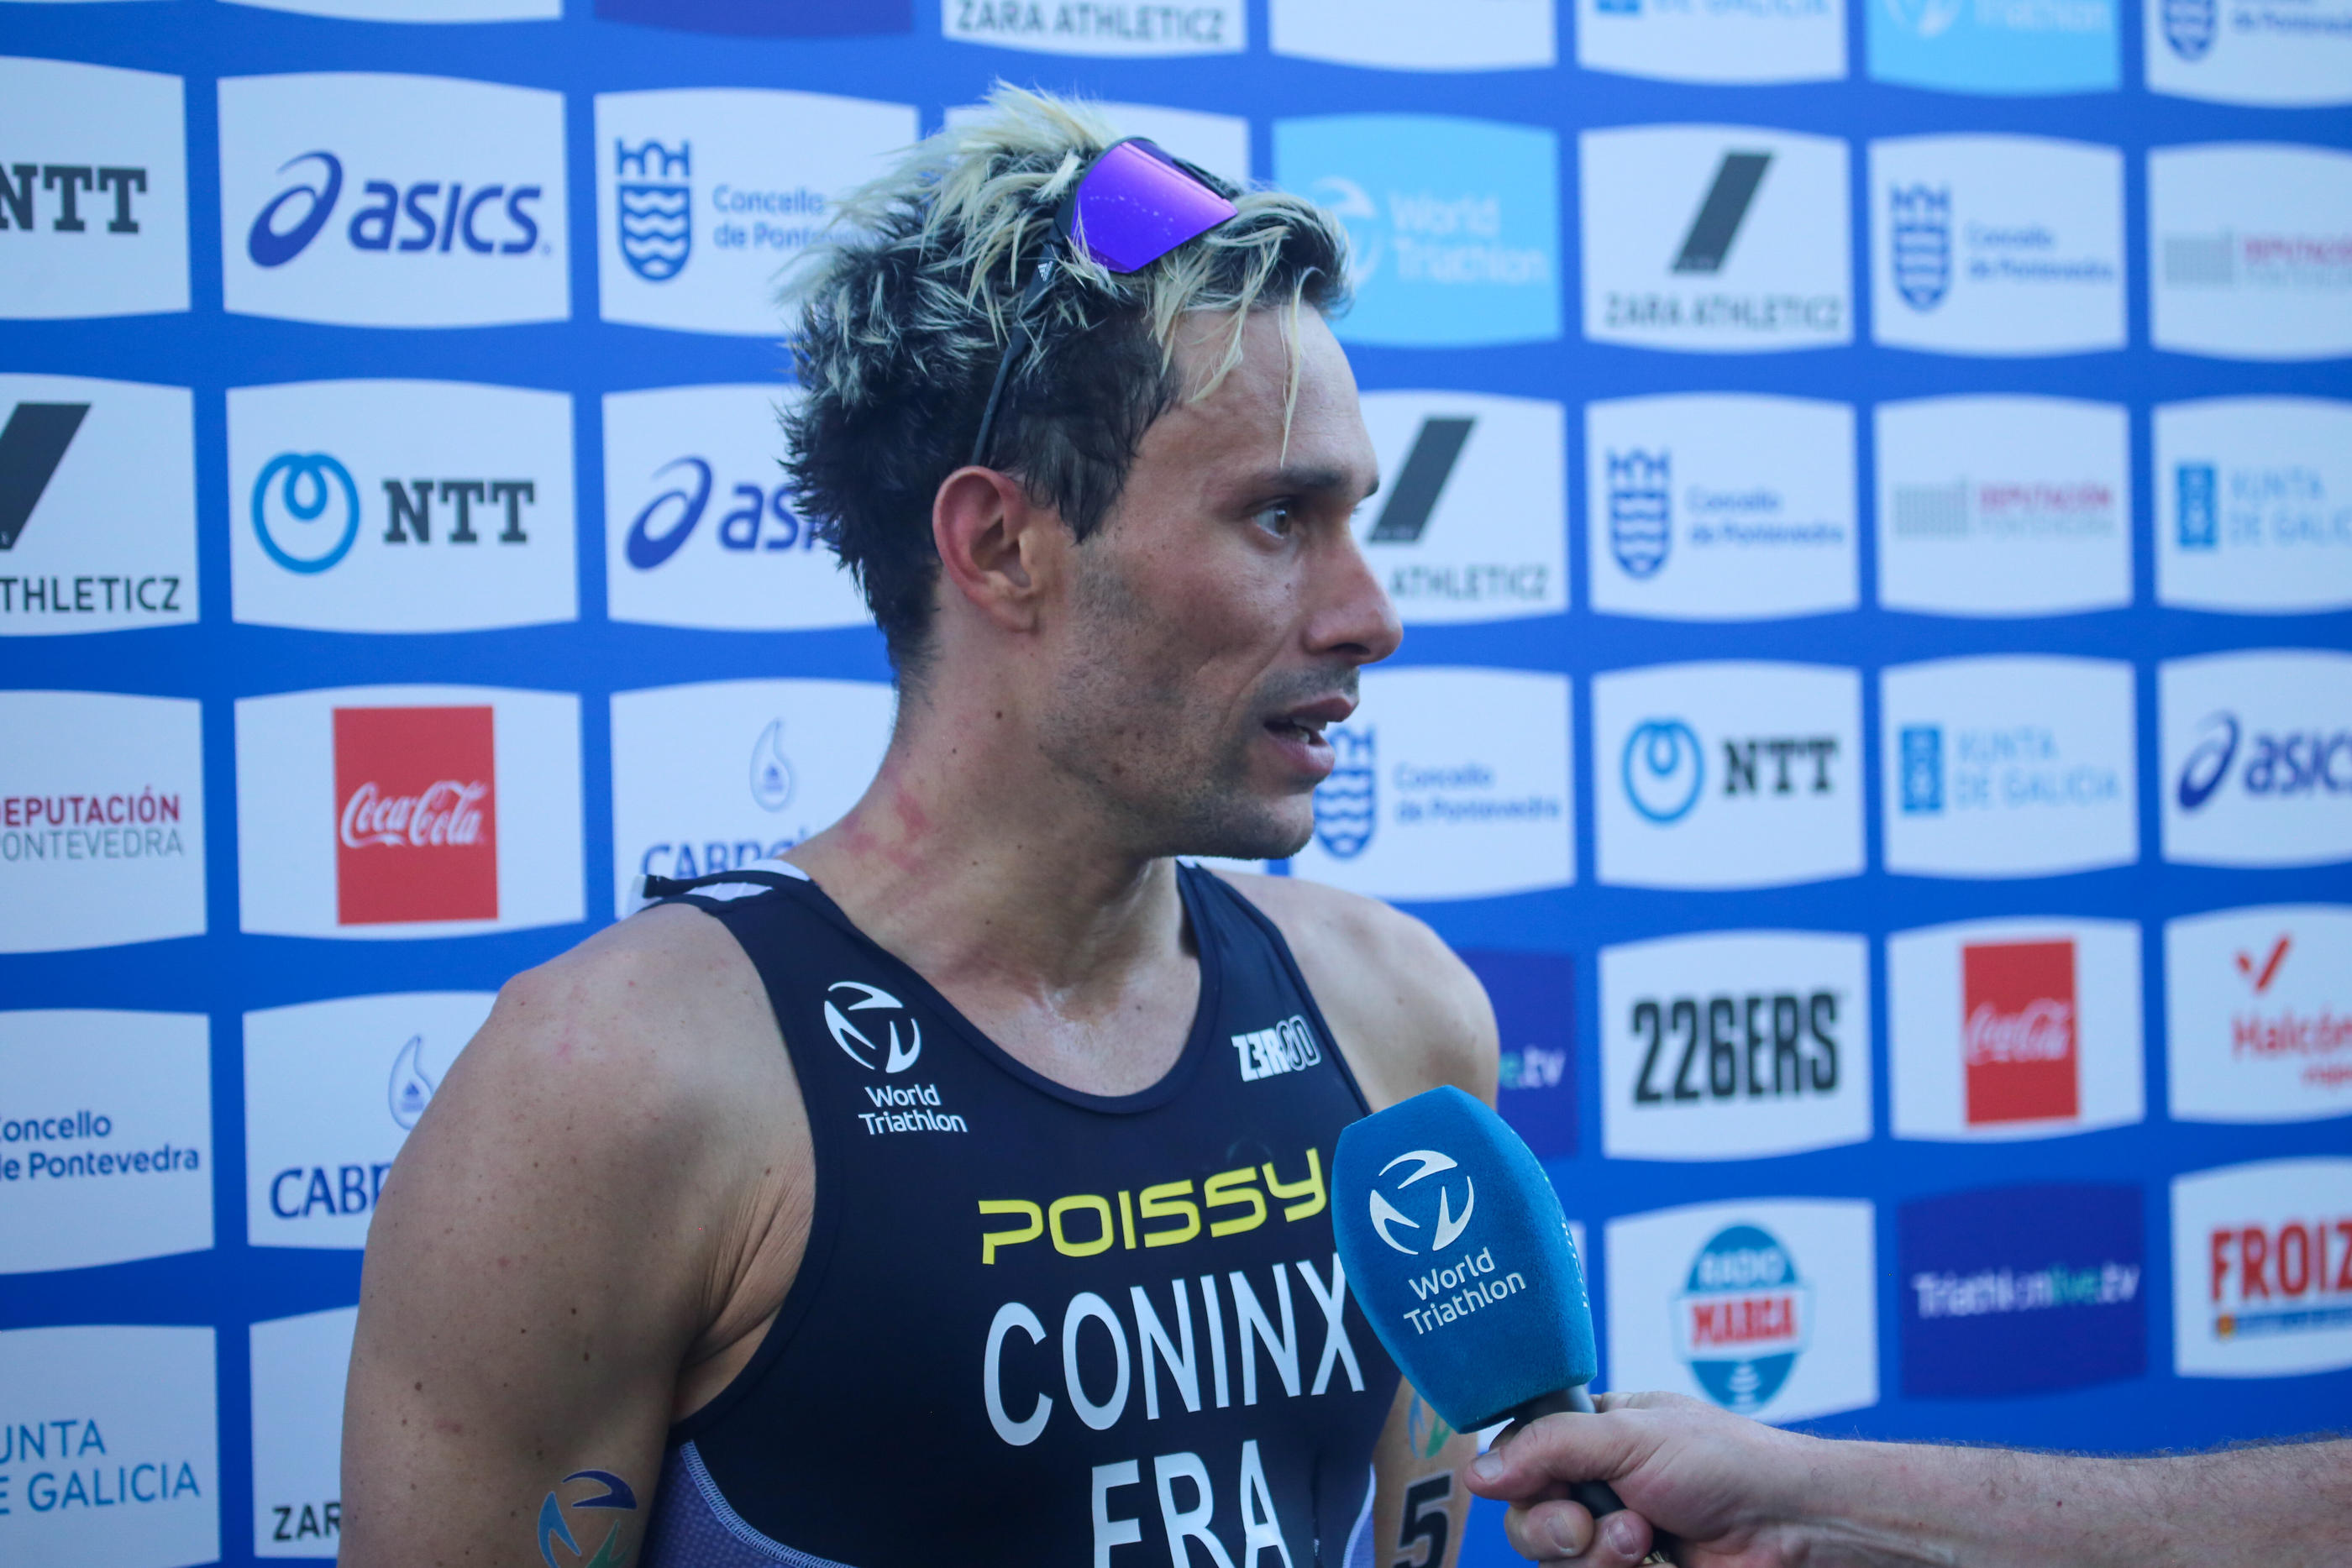 Dorian Coninx, champion du monde 2023 de triathlon, souffre d'une fracture au poignet droit et d'une fracture au coude droit. Il va être opéré ce jeudi. SUSU/Icon Sport